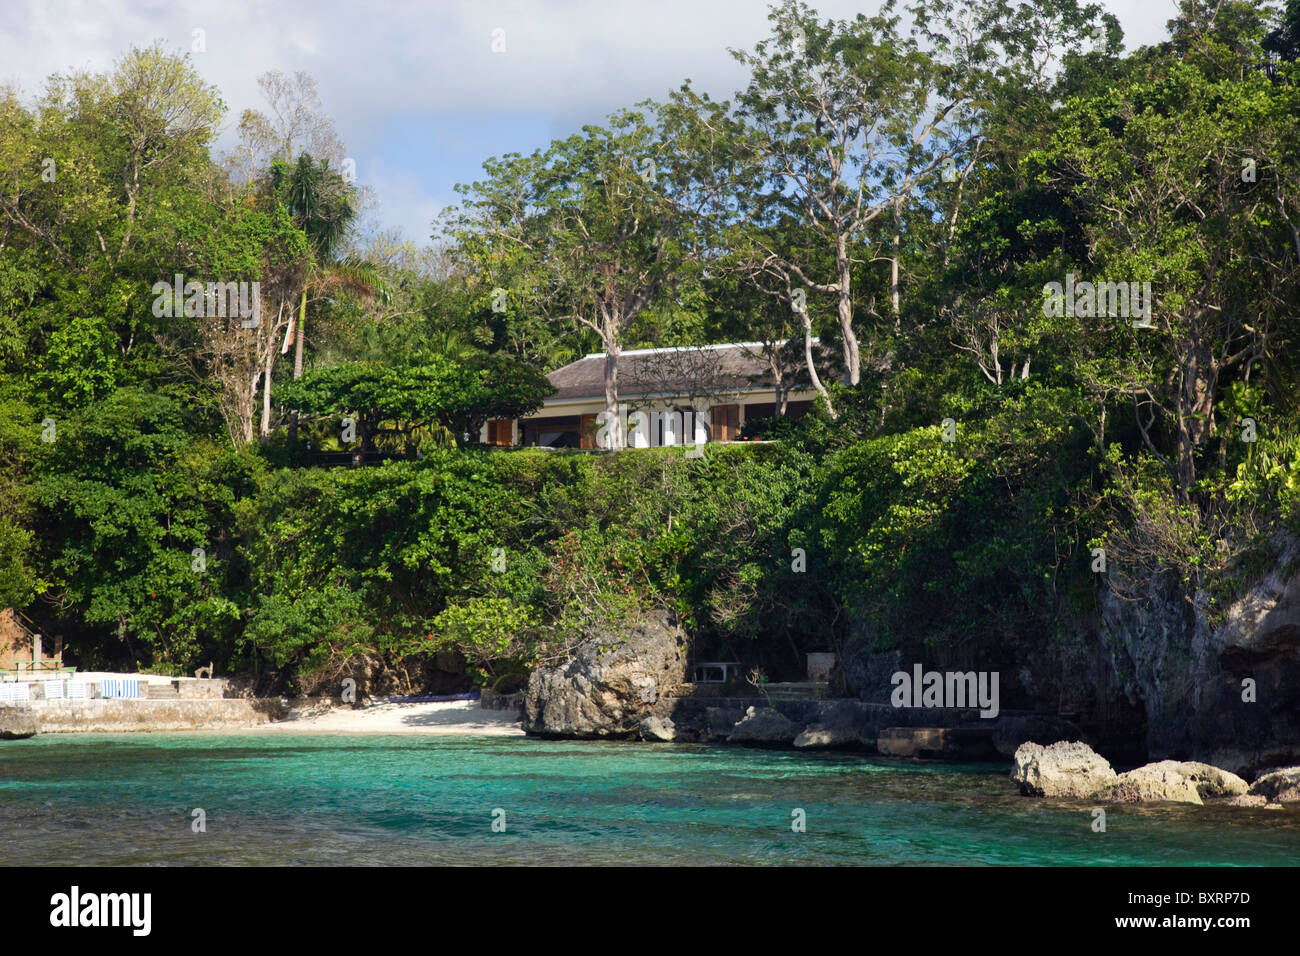 Jamaica, Oracabessa, Goldeneye, Vista del edificio junto al mar Foto de stock